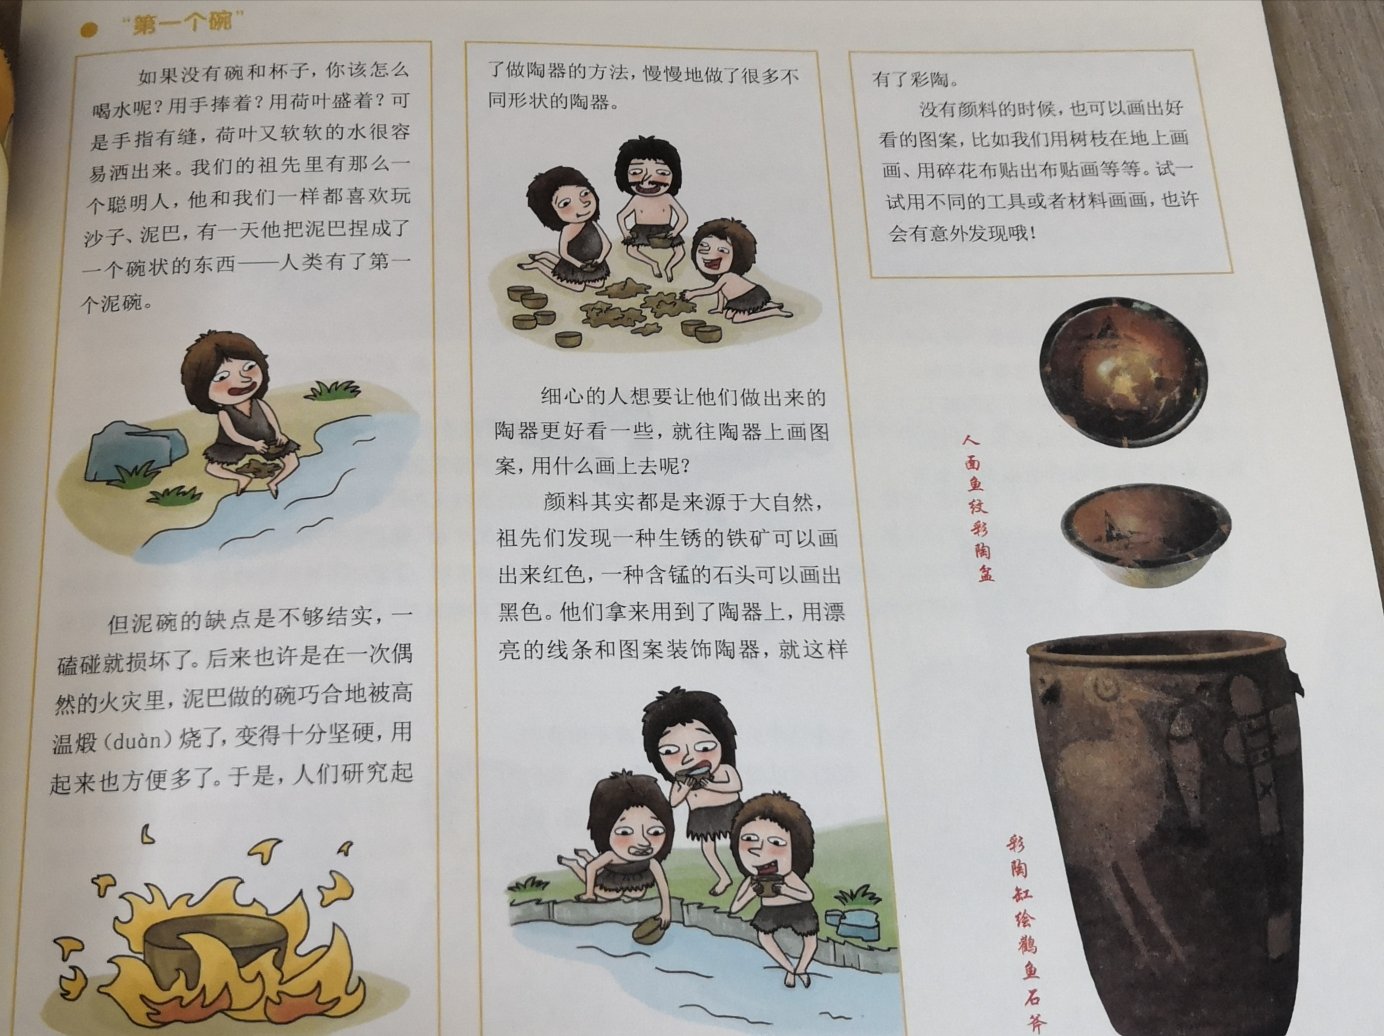 书本比较薄，简单讲述了各个朝代的诗书棋画特点和代表作，可以作为孩子入门的书籍。